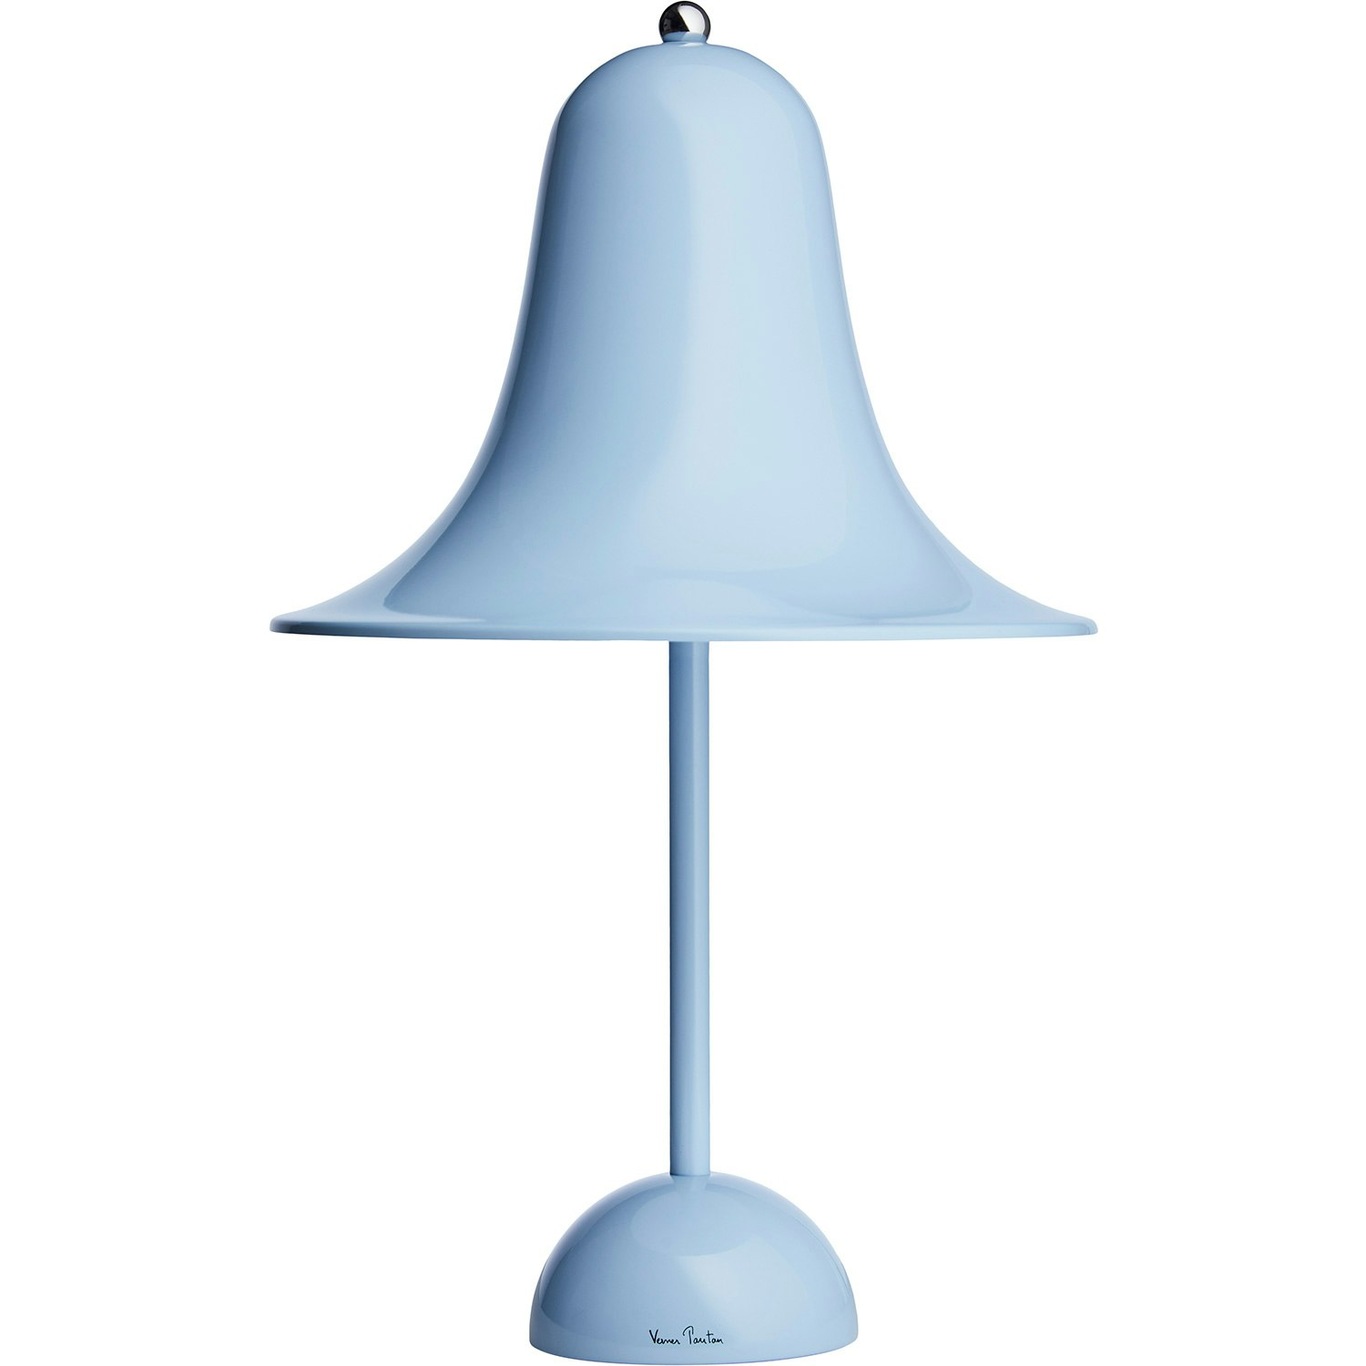 Pantop Table Lamp 23 cm, Light Blue